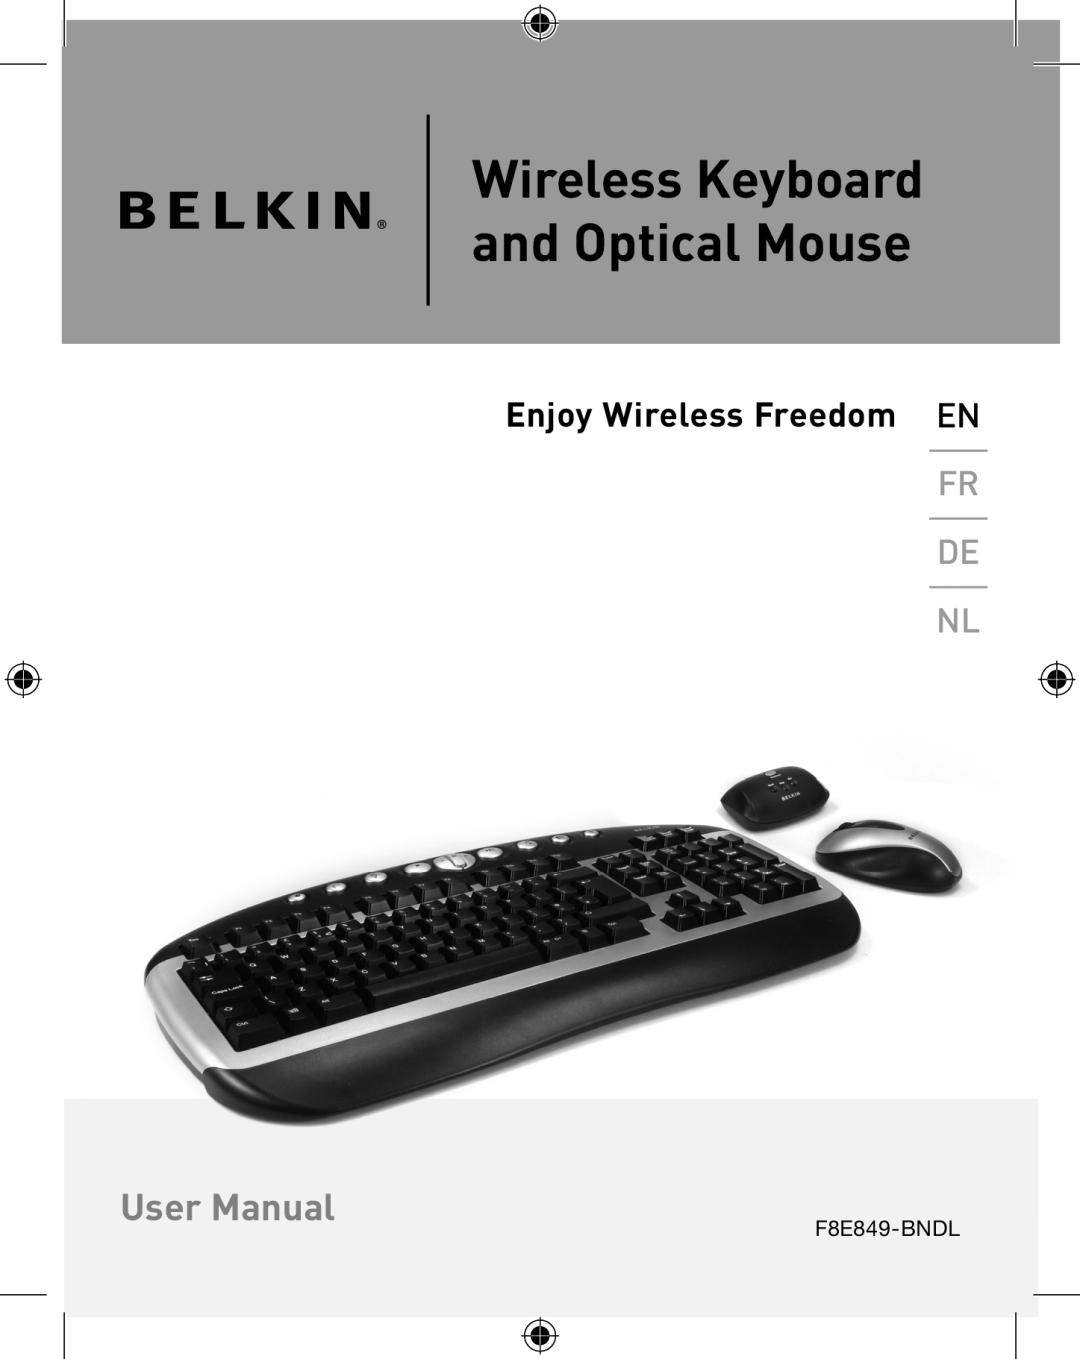 Belkin P74775UK, F8E849-BNDL user manual Enjoy Wireless Freedom EN, Wireless Keyboard and Optical Mouse, User Manual 